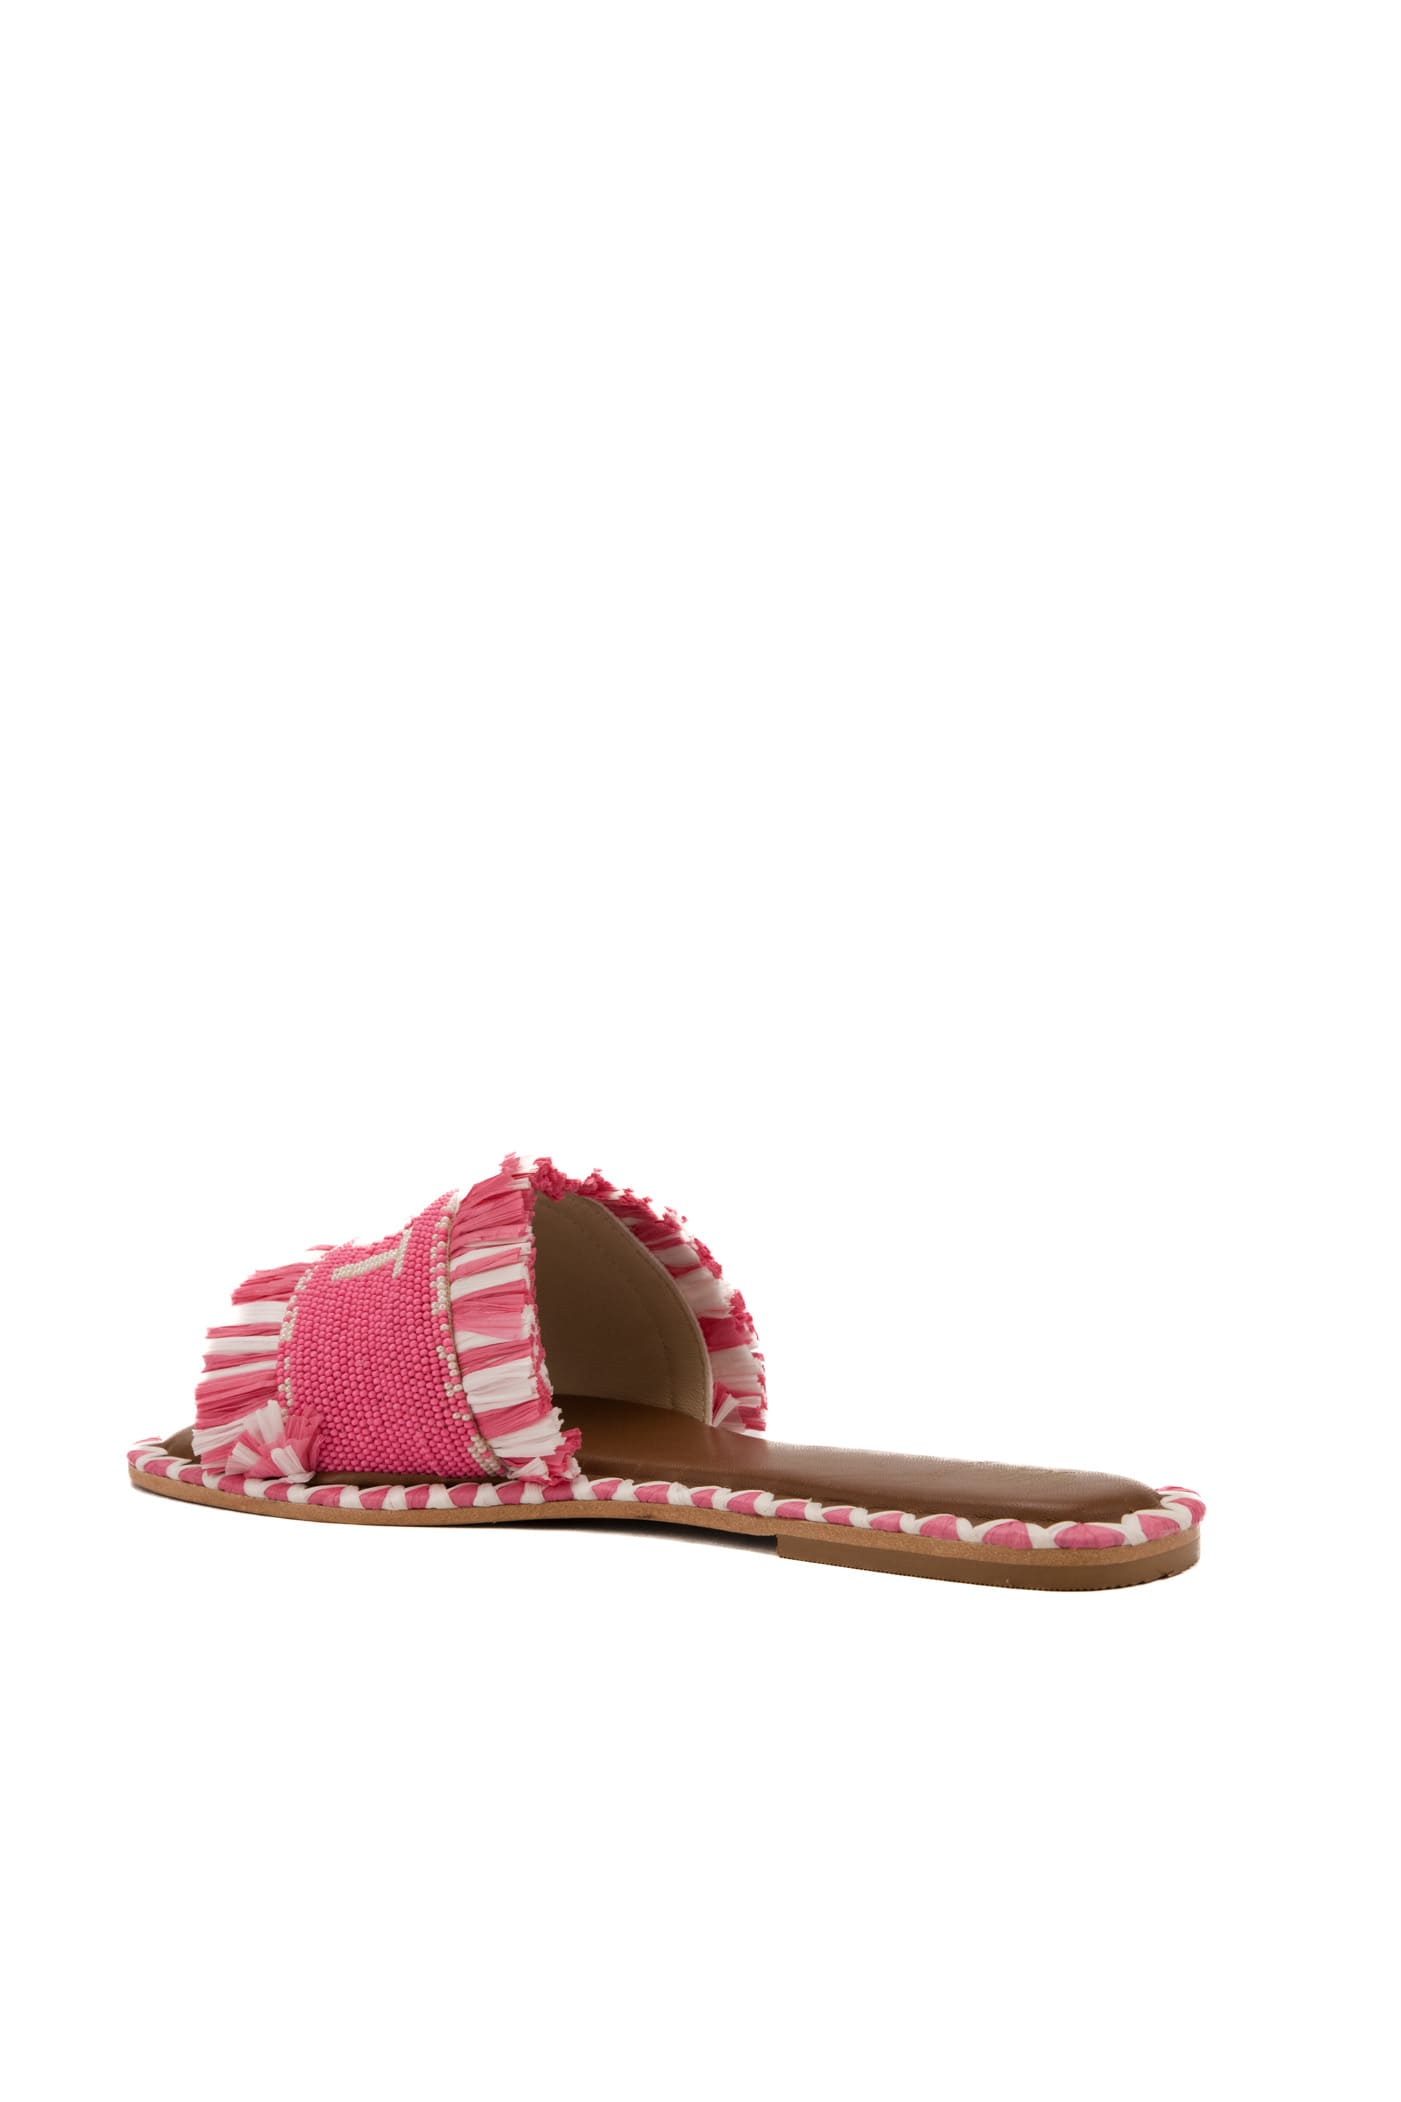 Shop De Siena Saint Tropez Pink Sandals